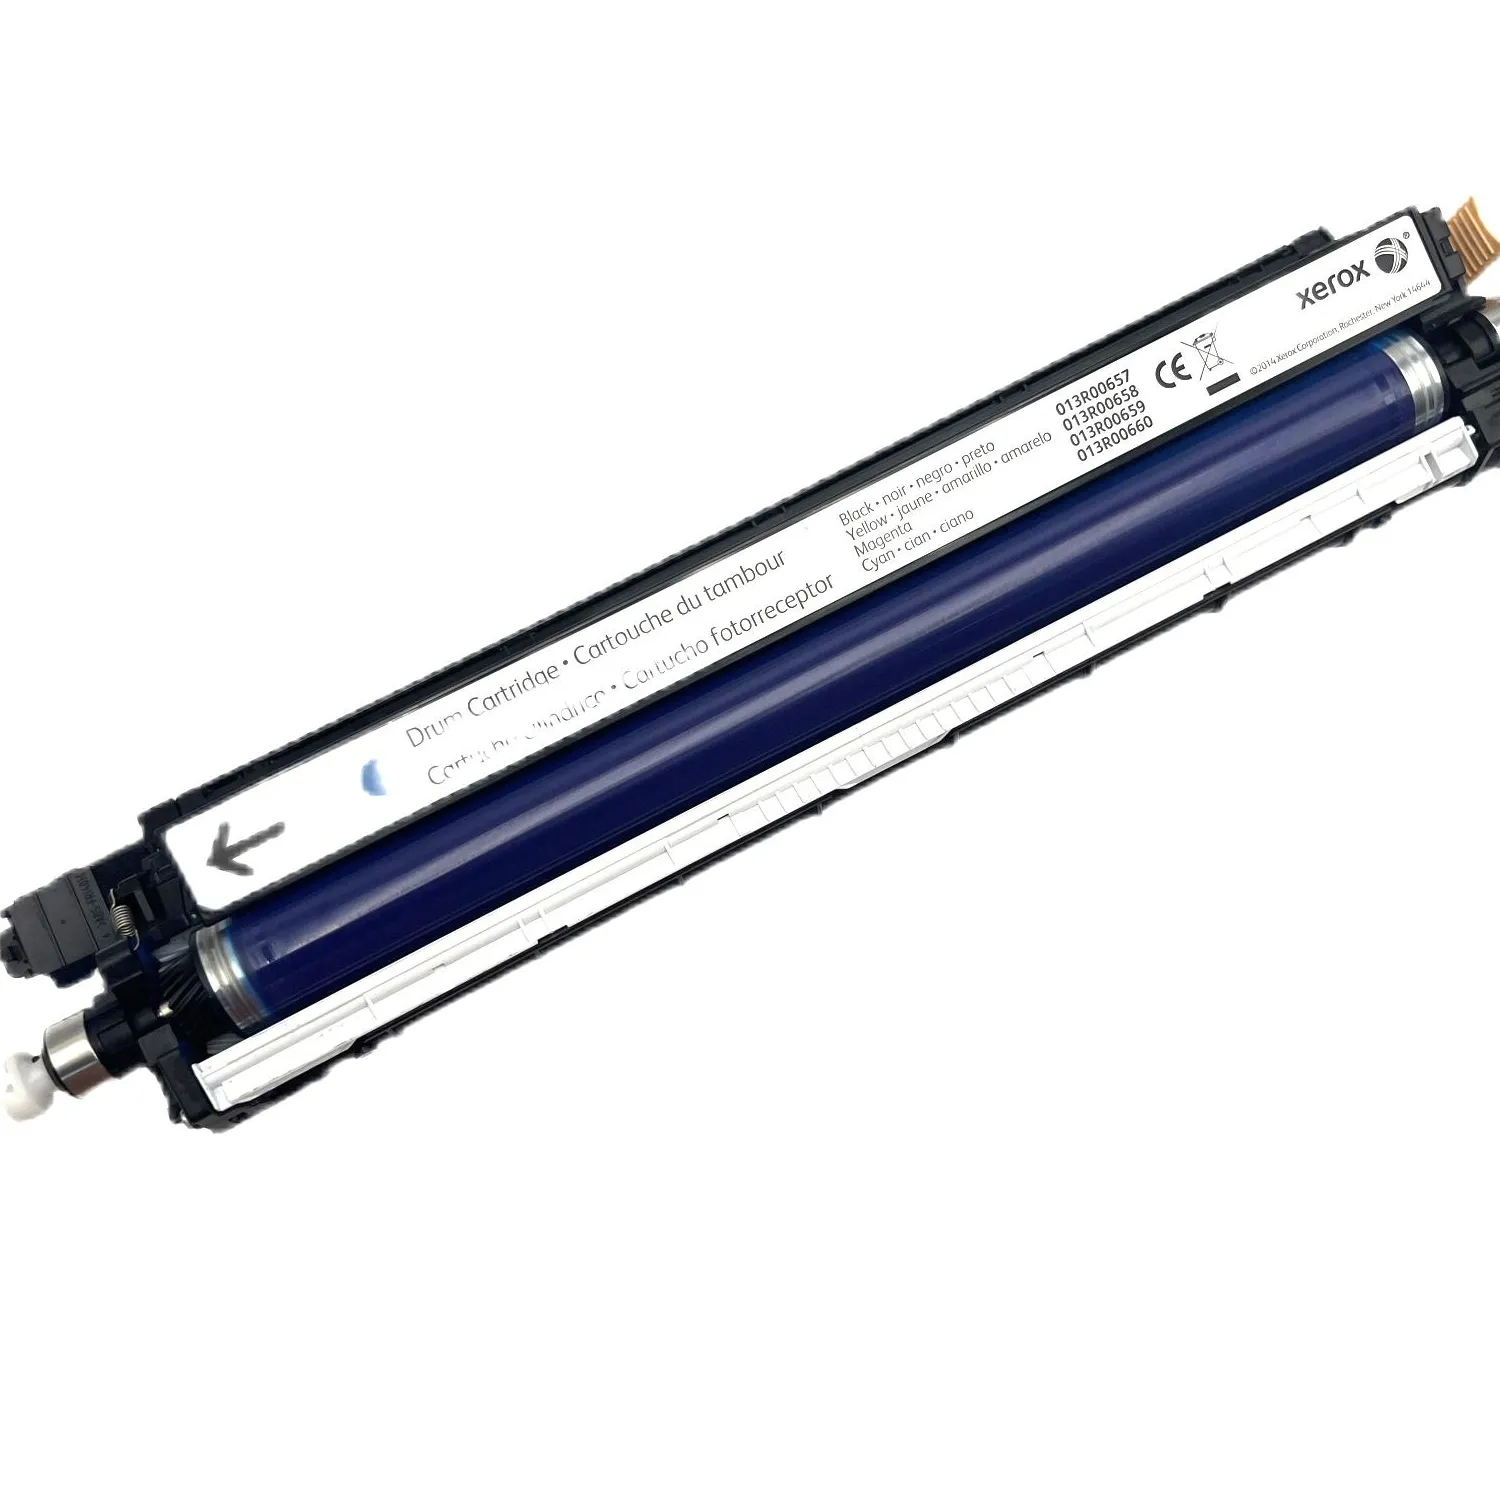 Factory Wholesale Compatible Imaging Unit For Xerox 7120 7125 7225 7220 Color Drum Kit Copier Drum Cartridge